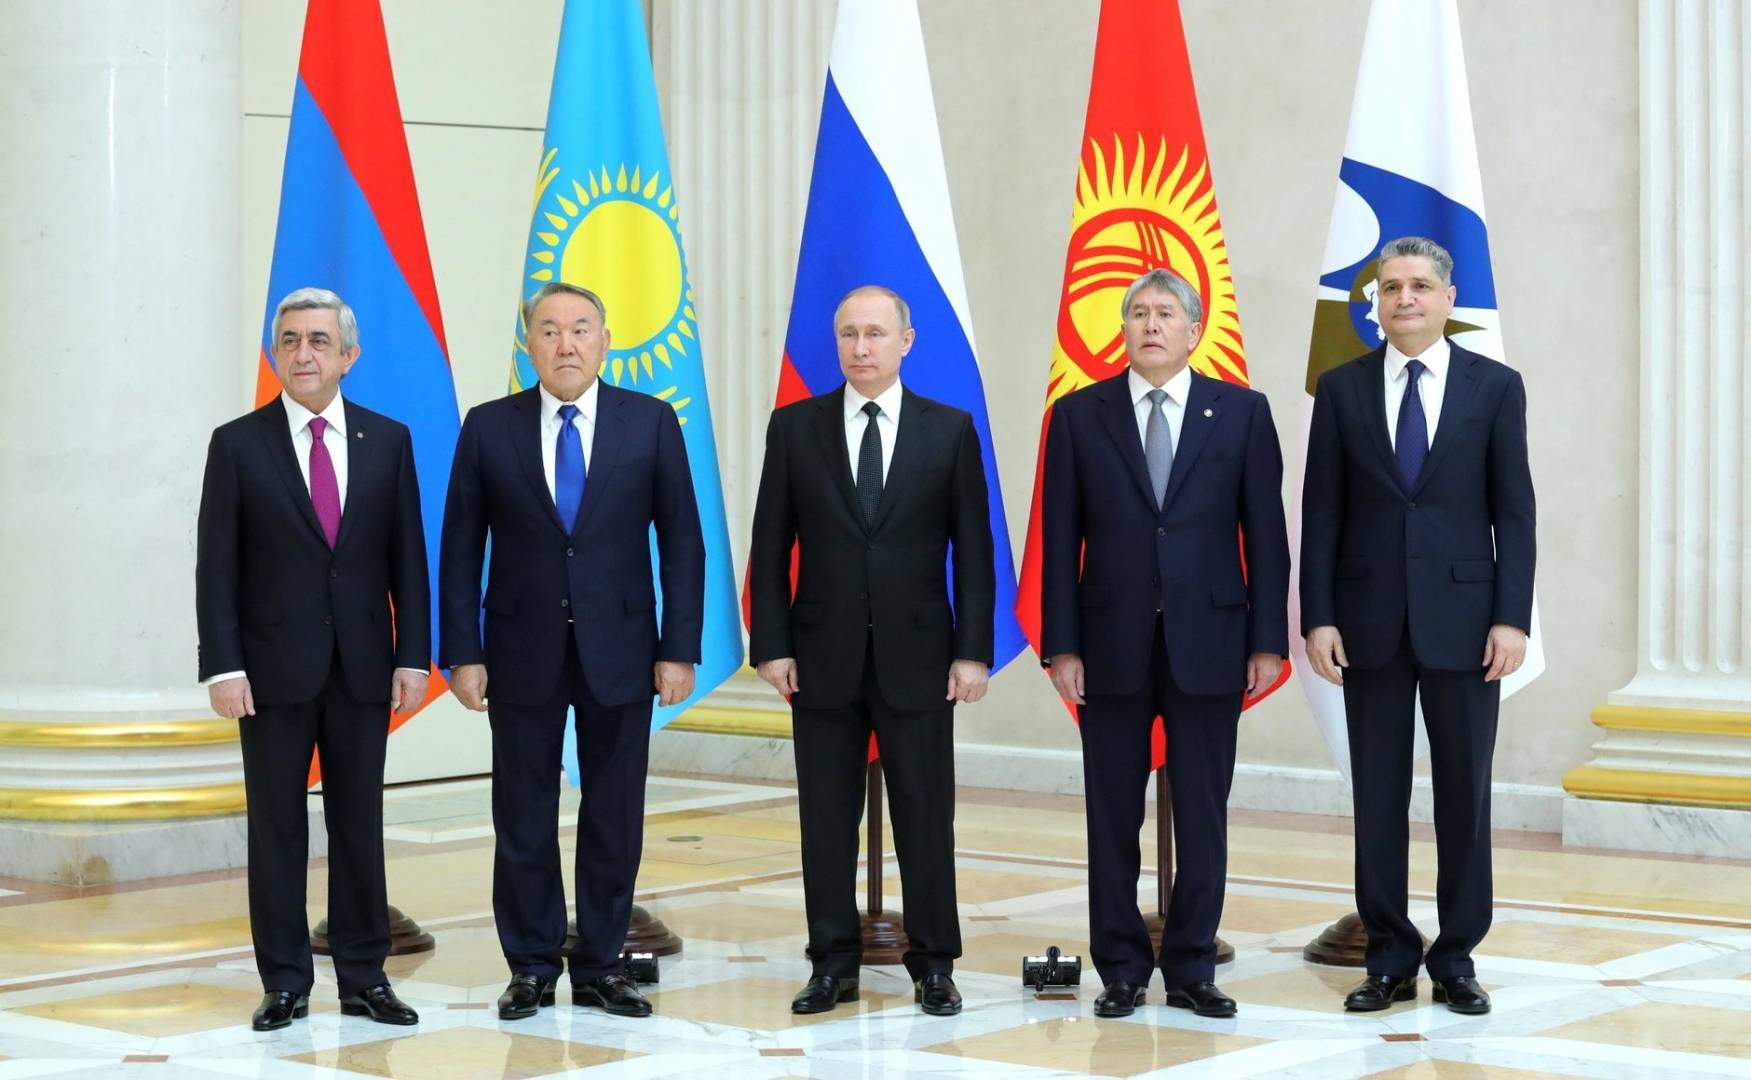 Вступление в евразийский экономический союз: влияет ли это на экономическое развитие стран-участниц?